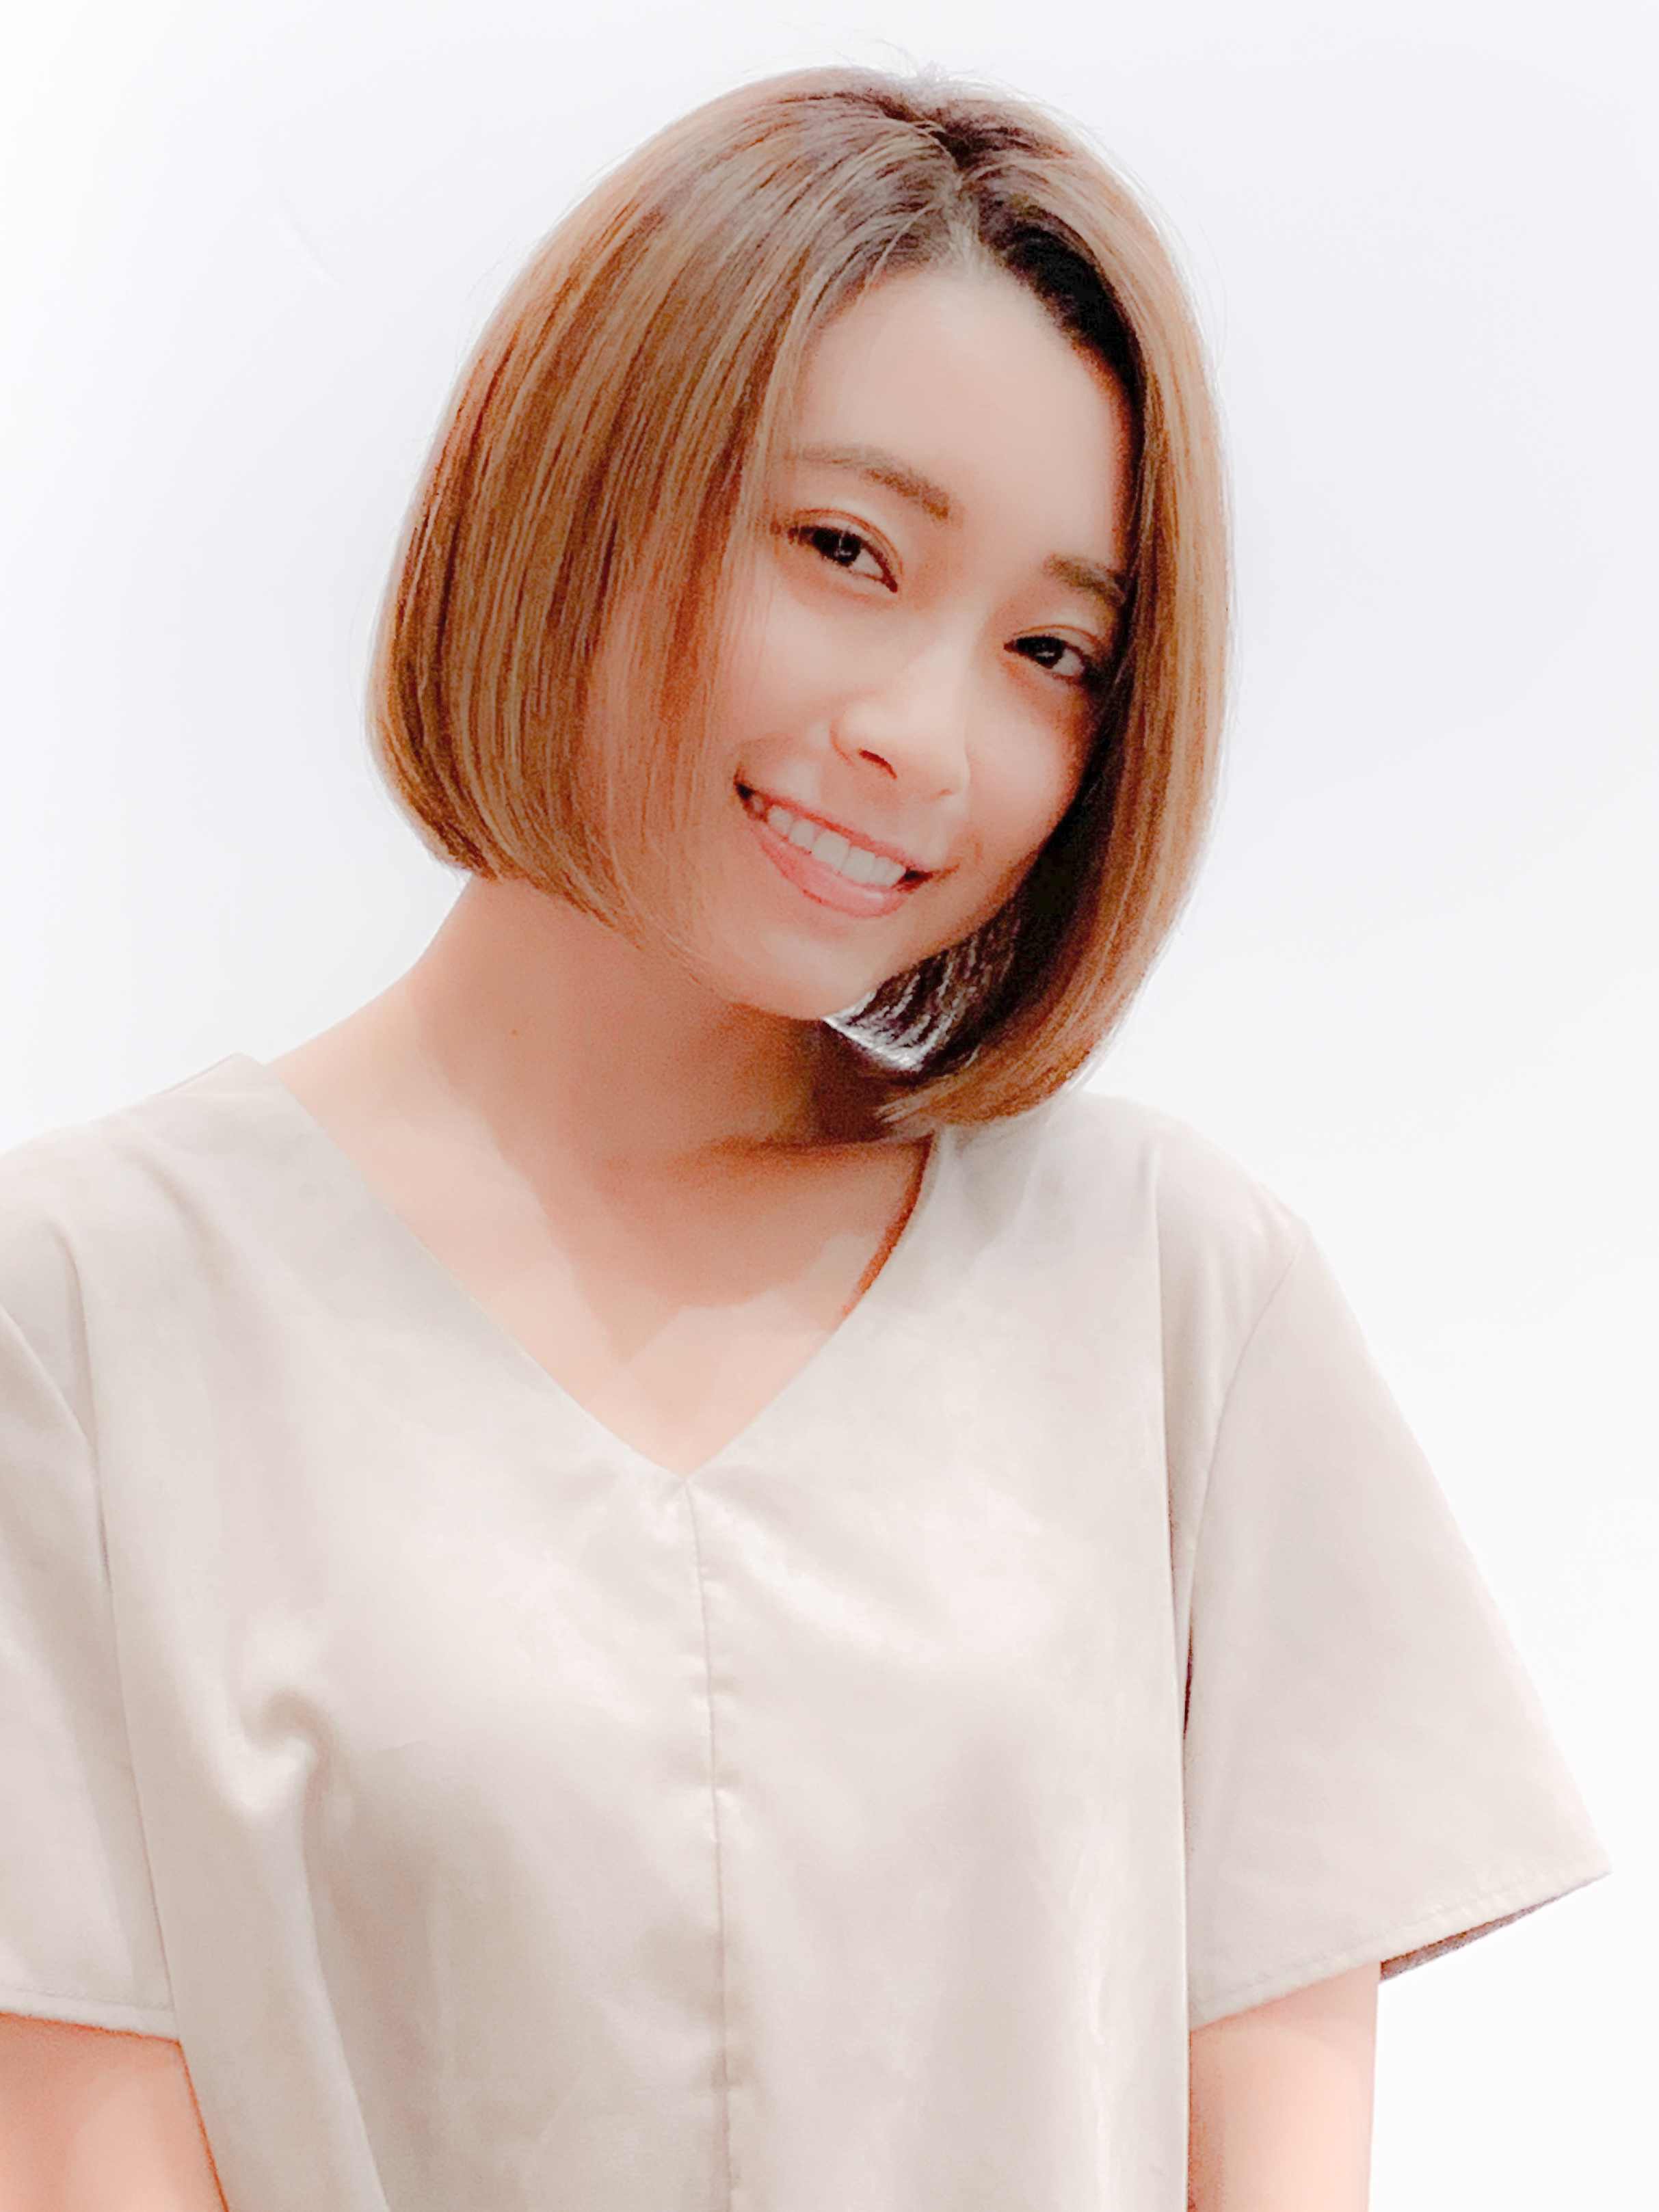 21年夏 ギリギリ結べる長さのボブで人気の髪型選 似合わせカットが上手い東京の美容師 美容室minx銀座 蛭田のブログ